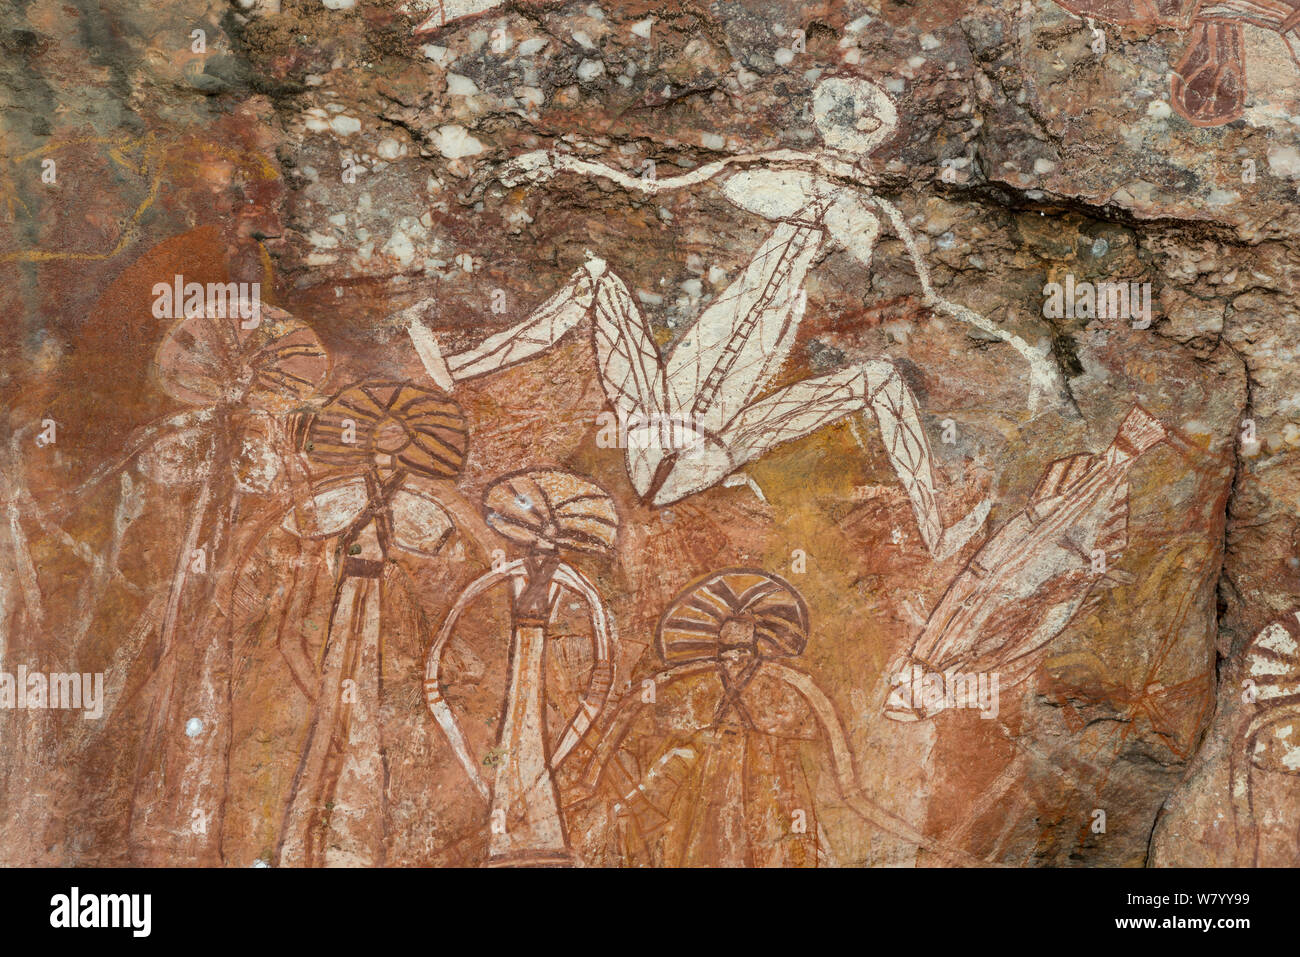 Aboriginal Rock Art de la figure masculine, le Kakadu National Park, Territoire du Nord, Australie. Décembre 2012. Banque D'Images